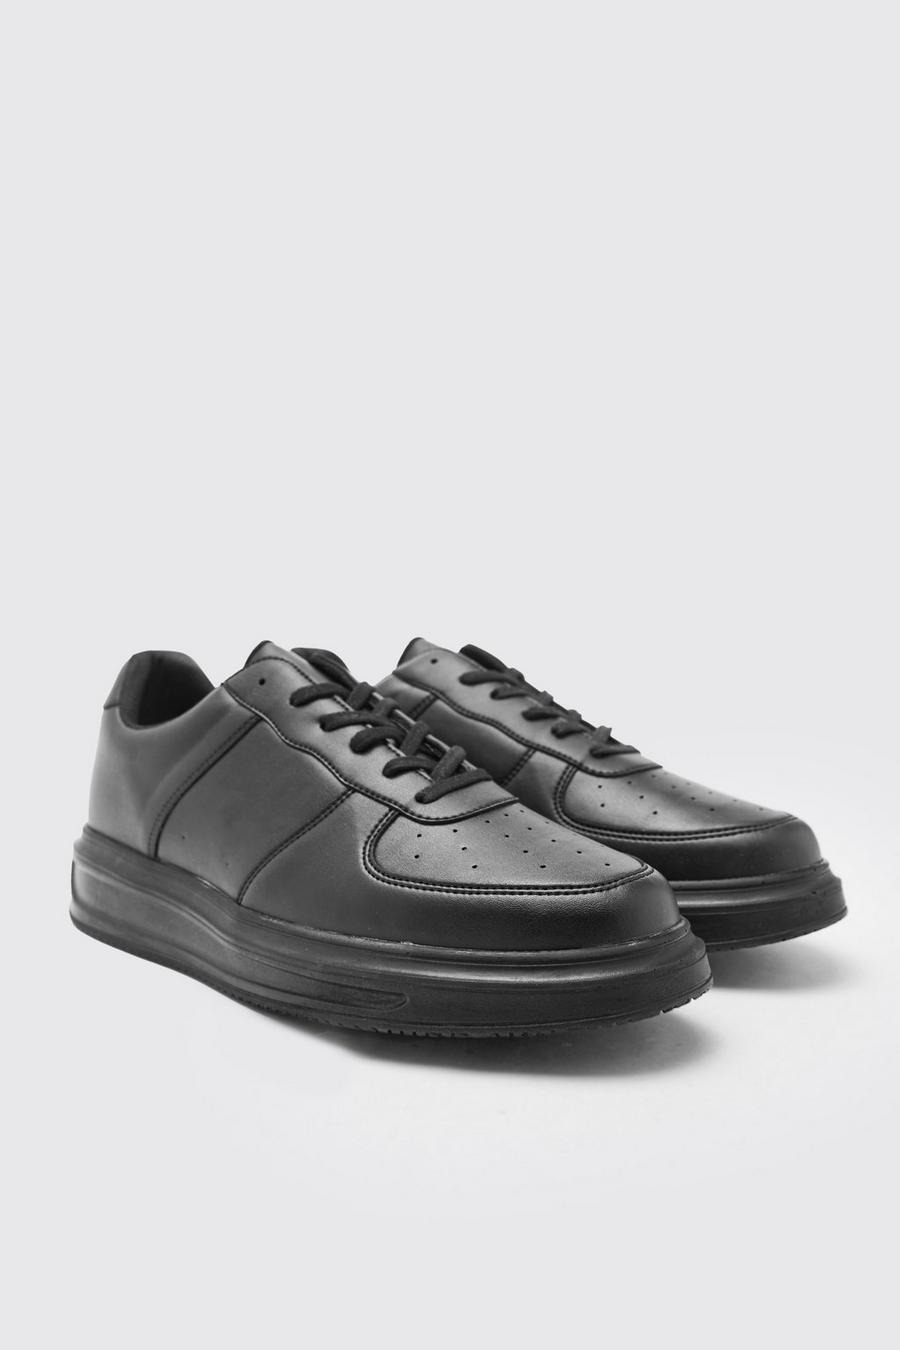 שחור nero נעלי ספורט עם פאנלים בשני צבעים